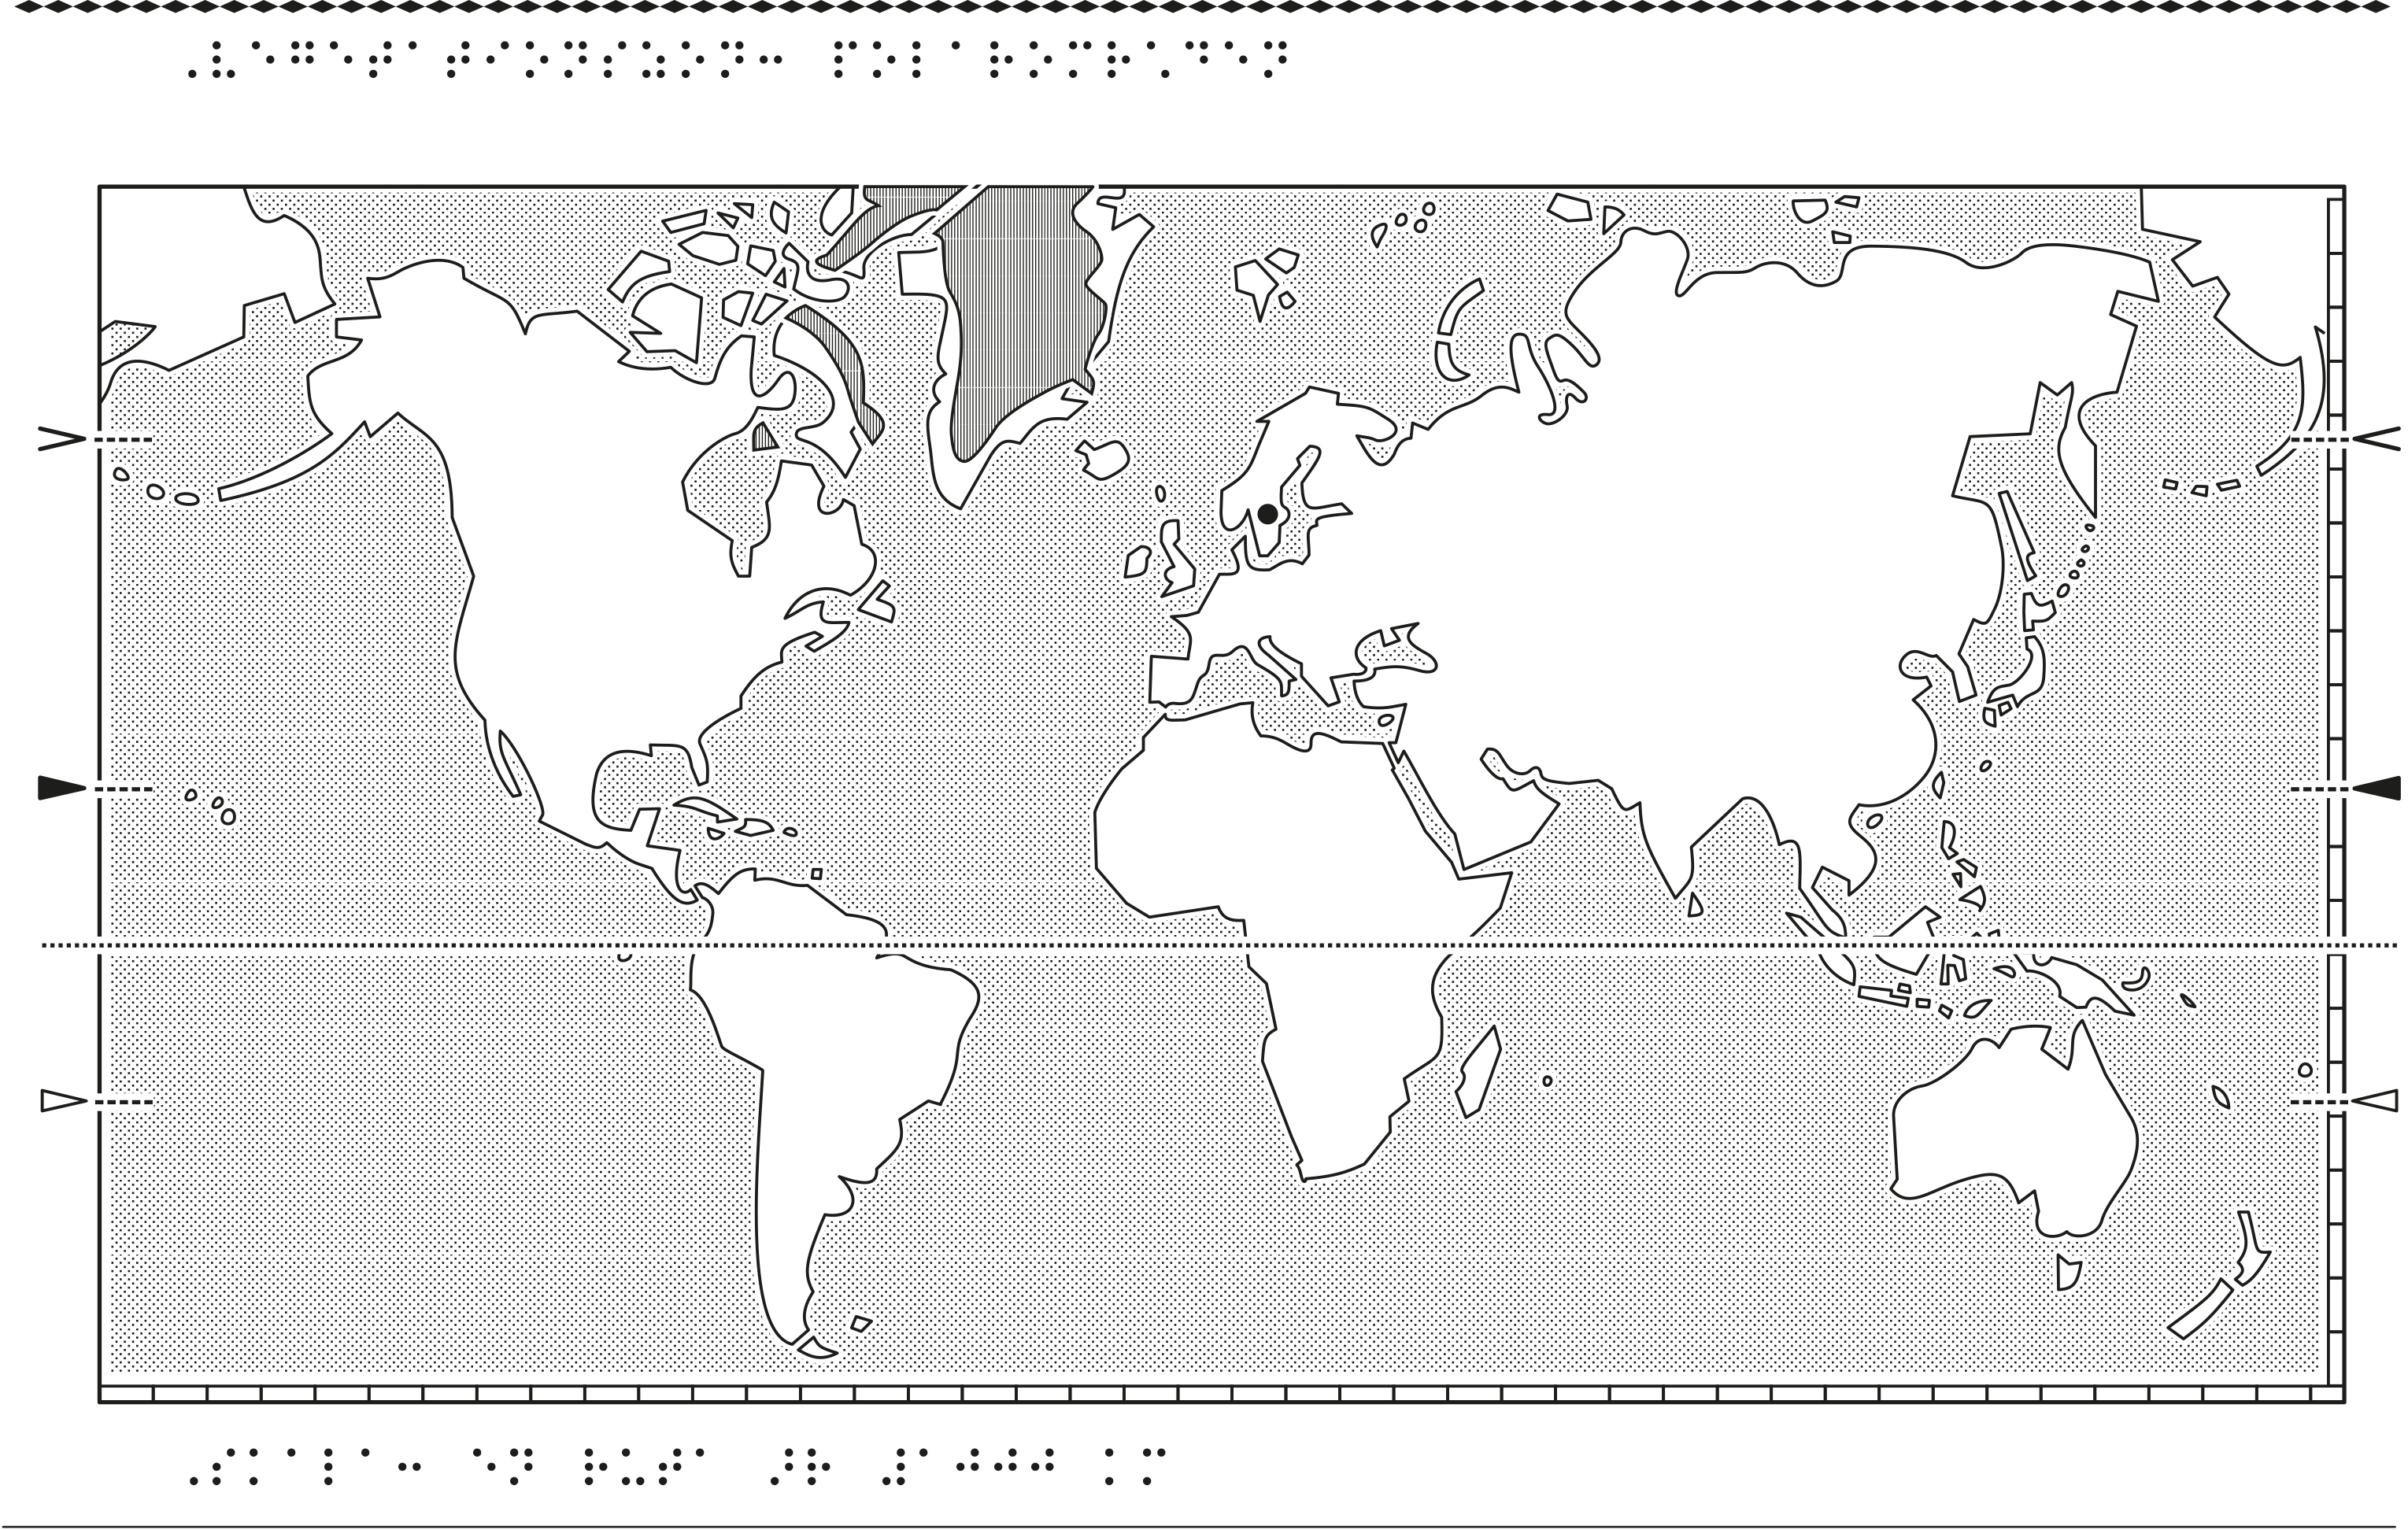 Världskarta i relief med polarområden markerade.